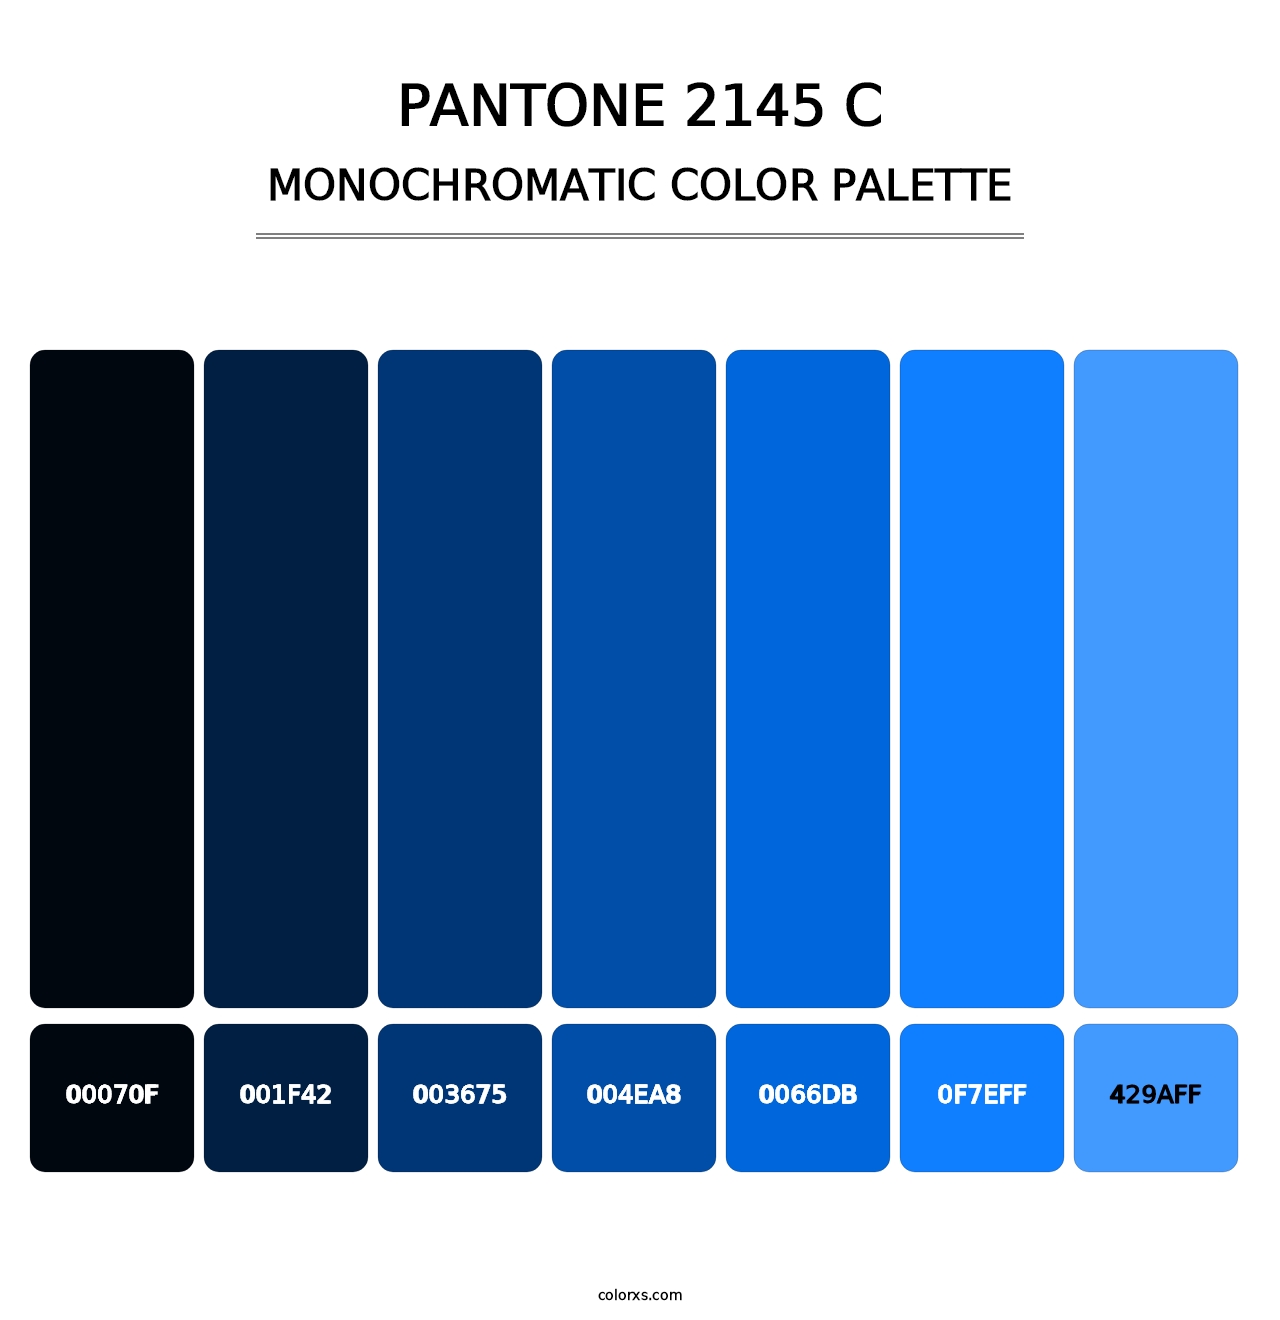 PANTONE 2145 C - Monochromatic Color Palette